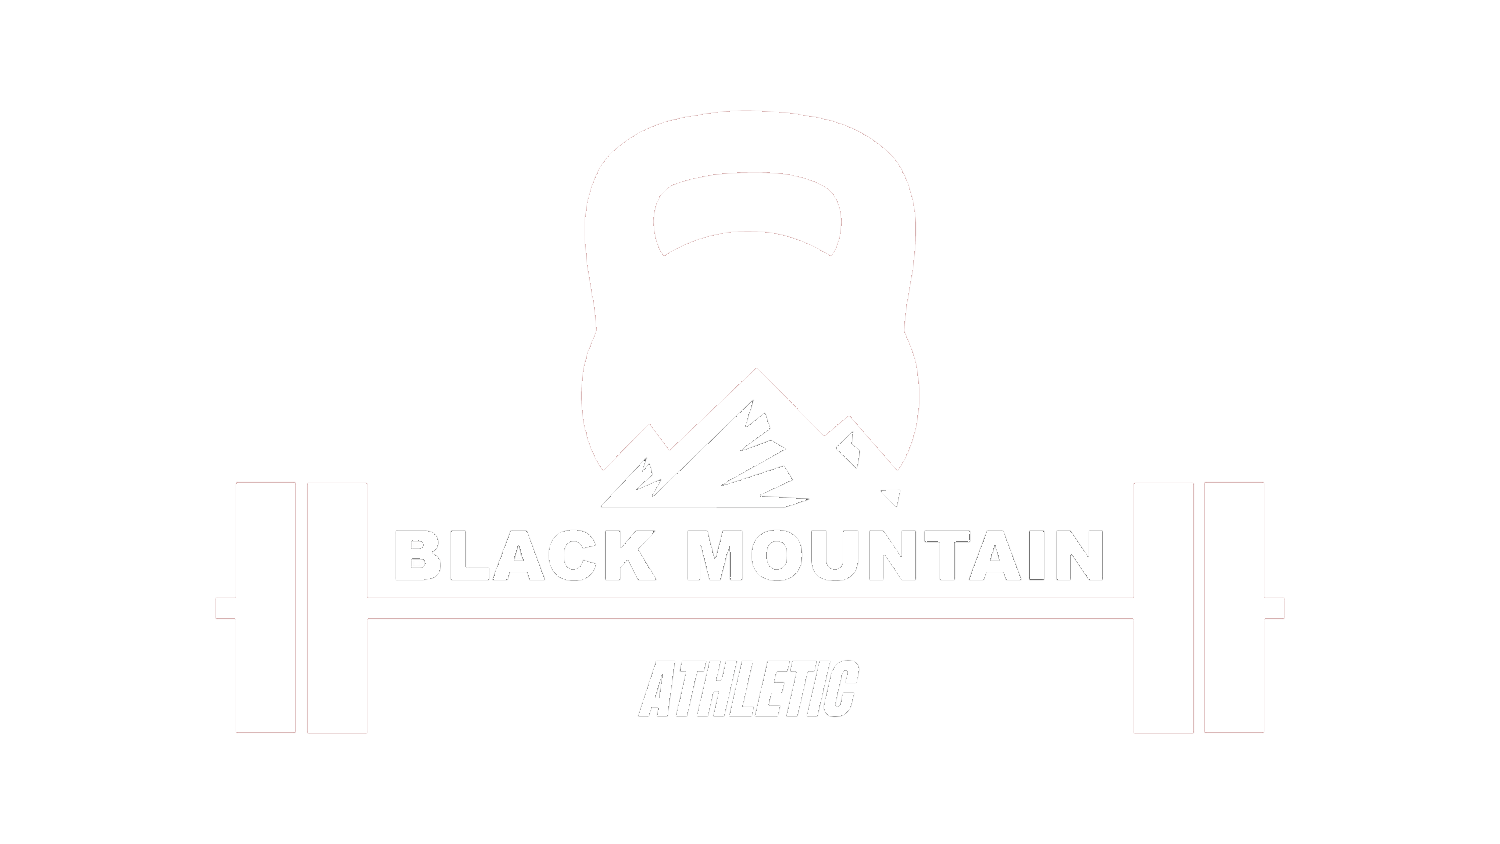 Black Mountain Athletic